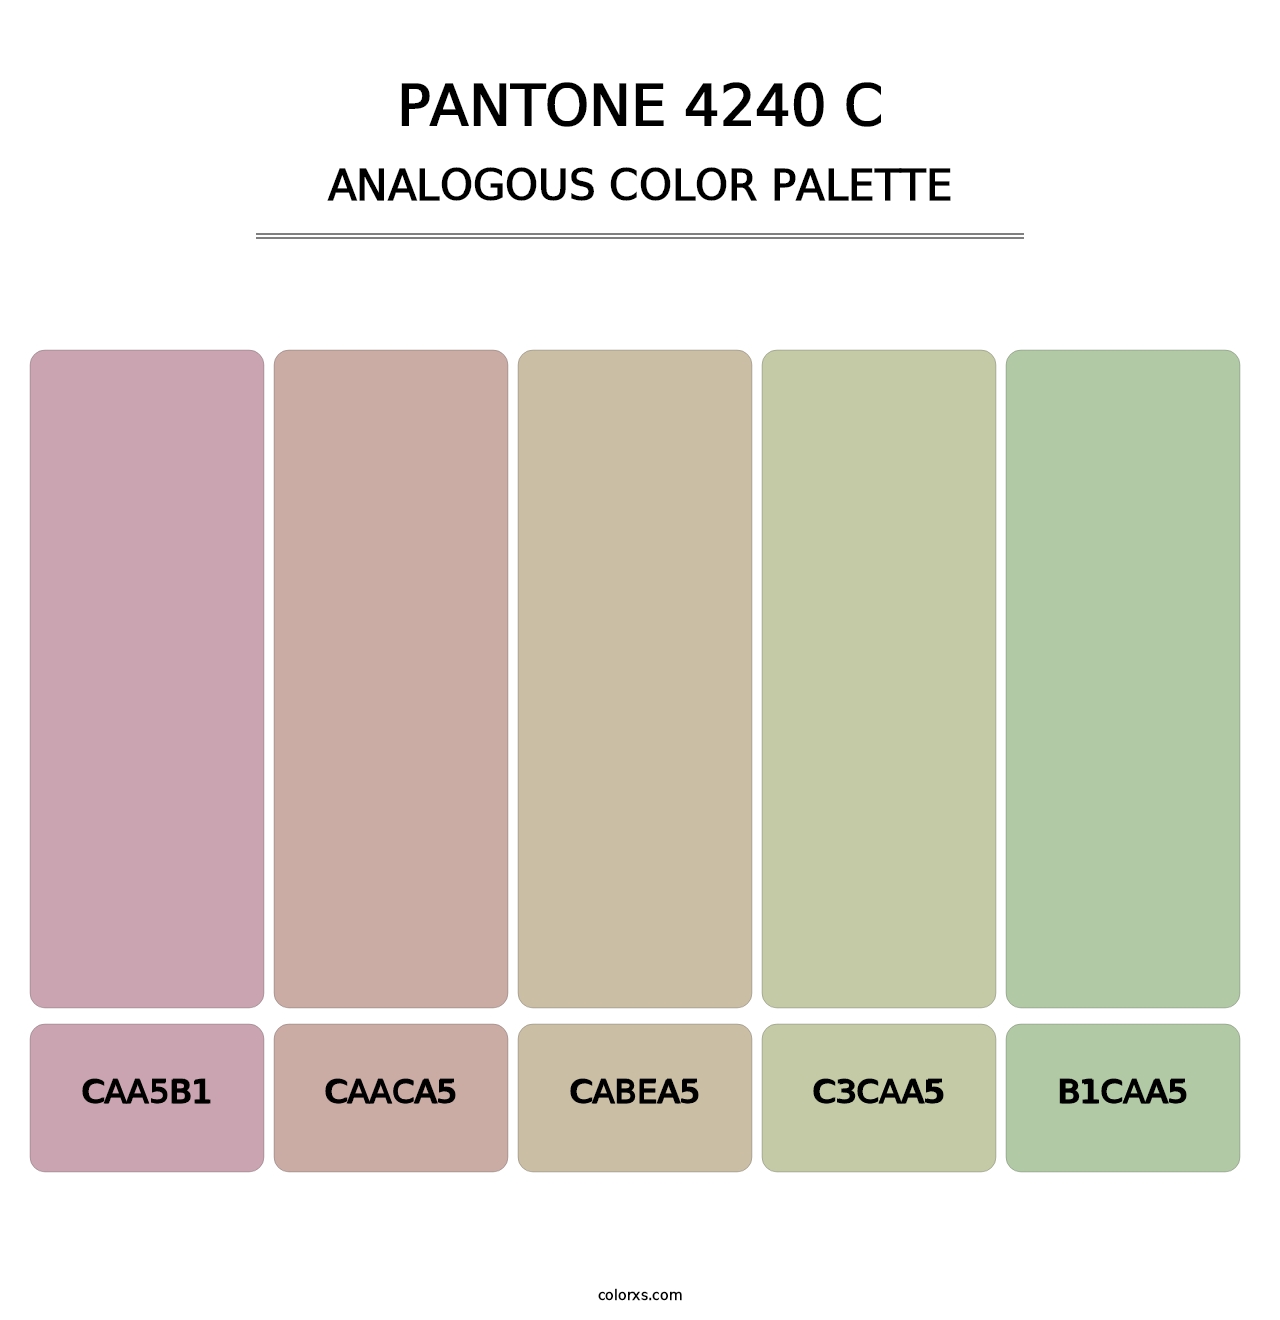 PANTONE 4240 C - Analogous Color Palette